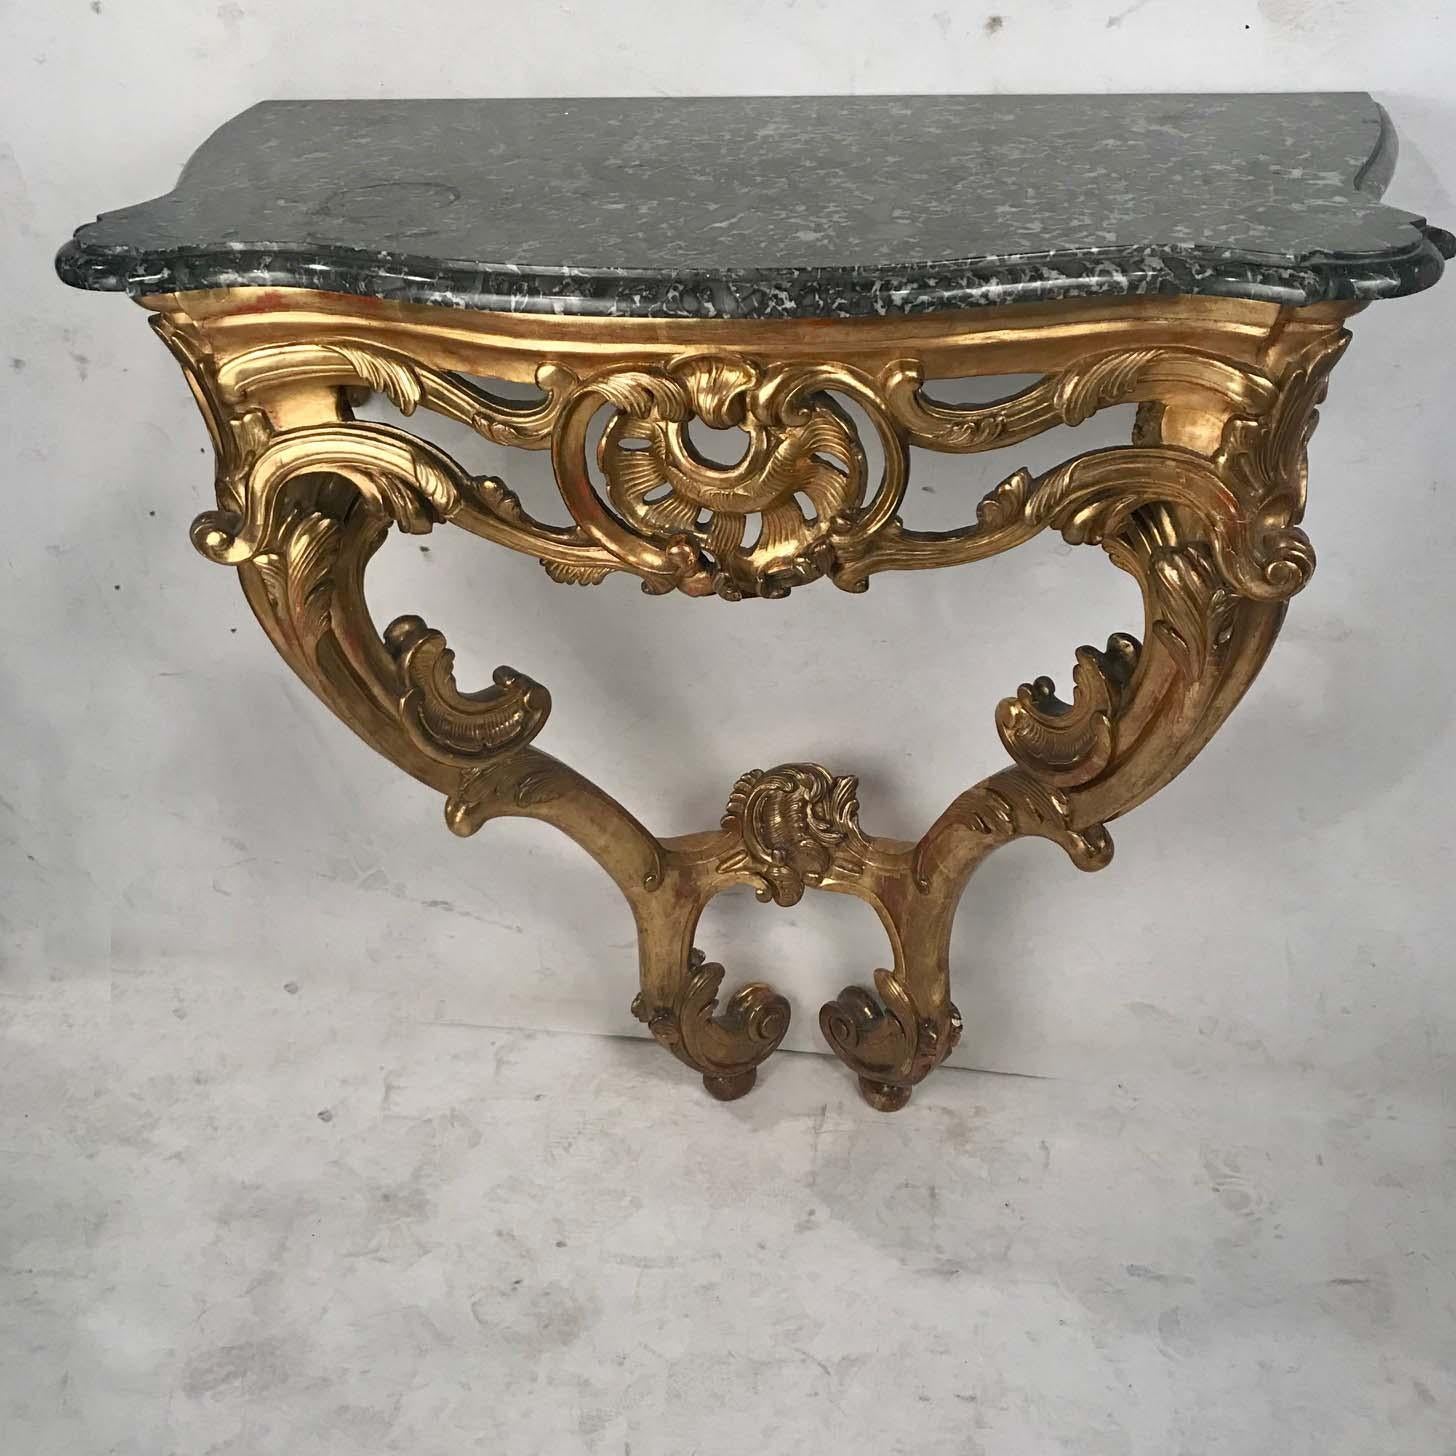 Console en bois doré de style Louis XV reposant sur deux tables en bois sculpté.  Le motif d'acanthe sinueux et incurvé apporte légèreté et mouvement.
Surmonté d'un plateau en marbre Gris Saint-Anne, évasé et biseauté.
Cette jolie table conviendrait